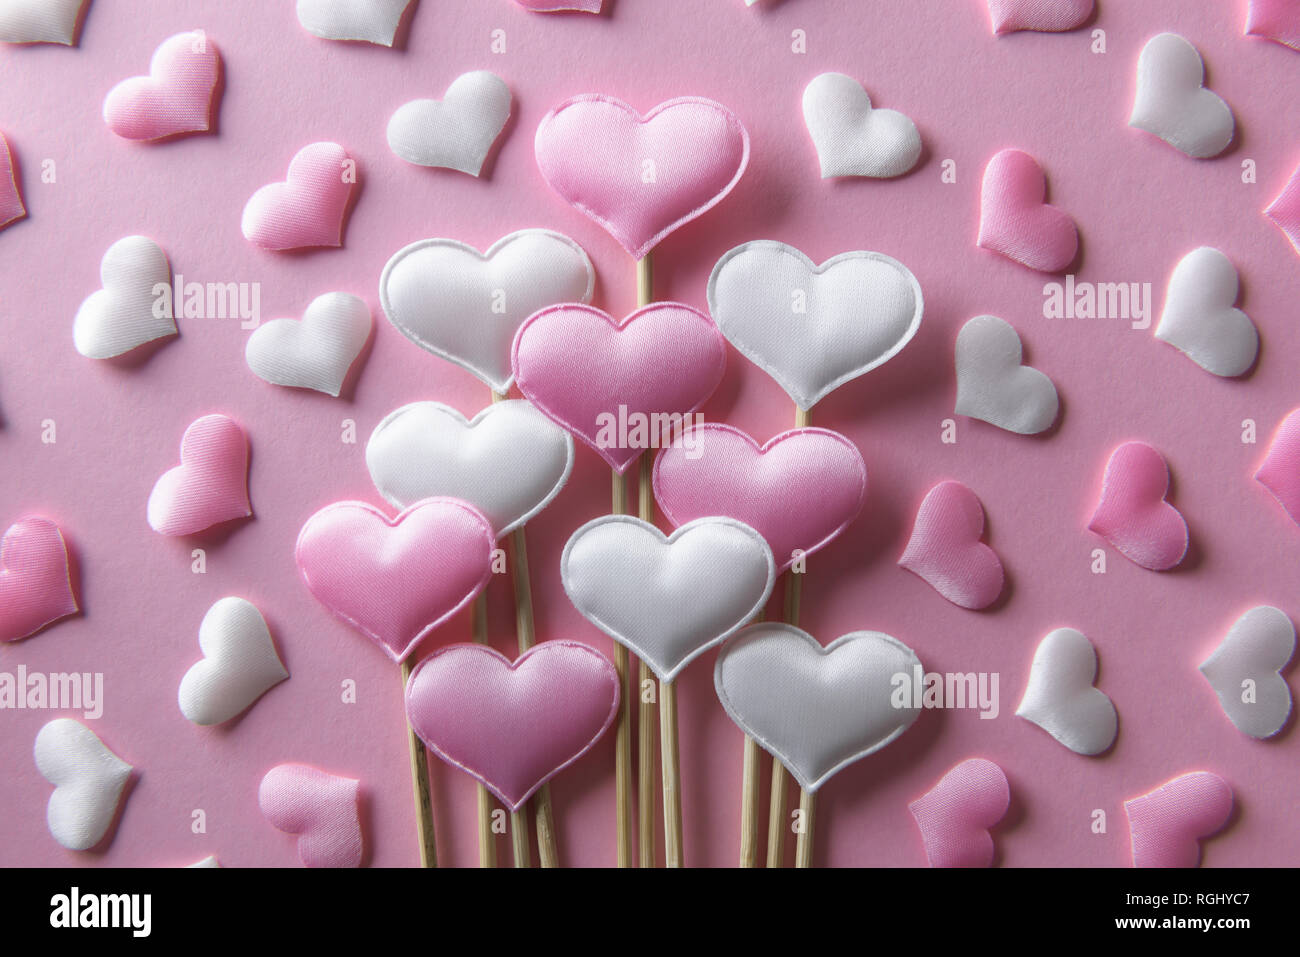 Textil rosa corazones en palos de madera closeup. Día de San Valentín de fondo, textura y creativo concepto de amor Foto de stock